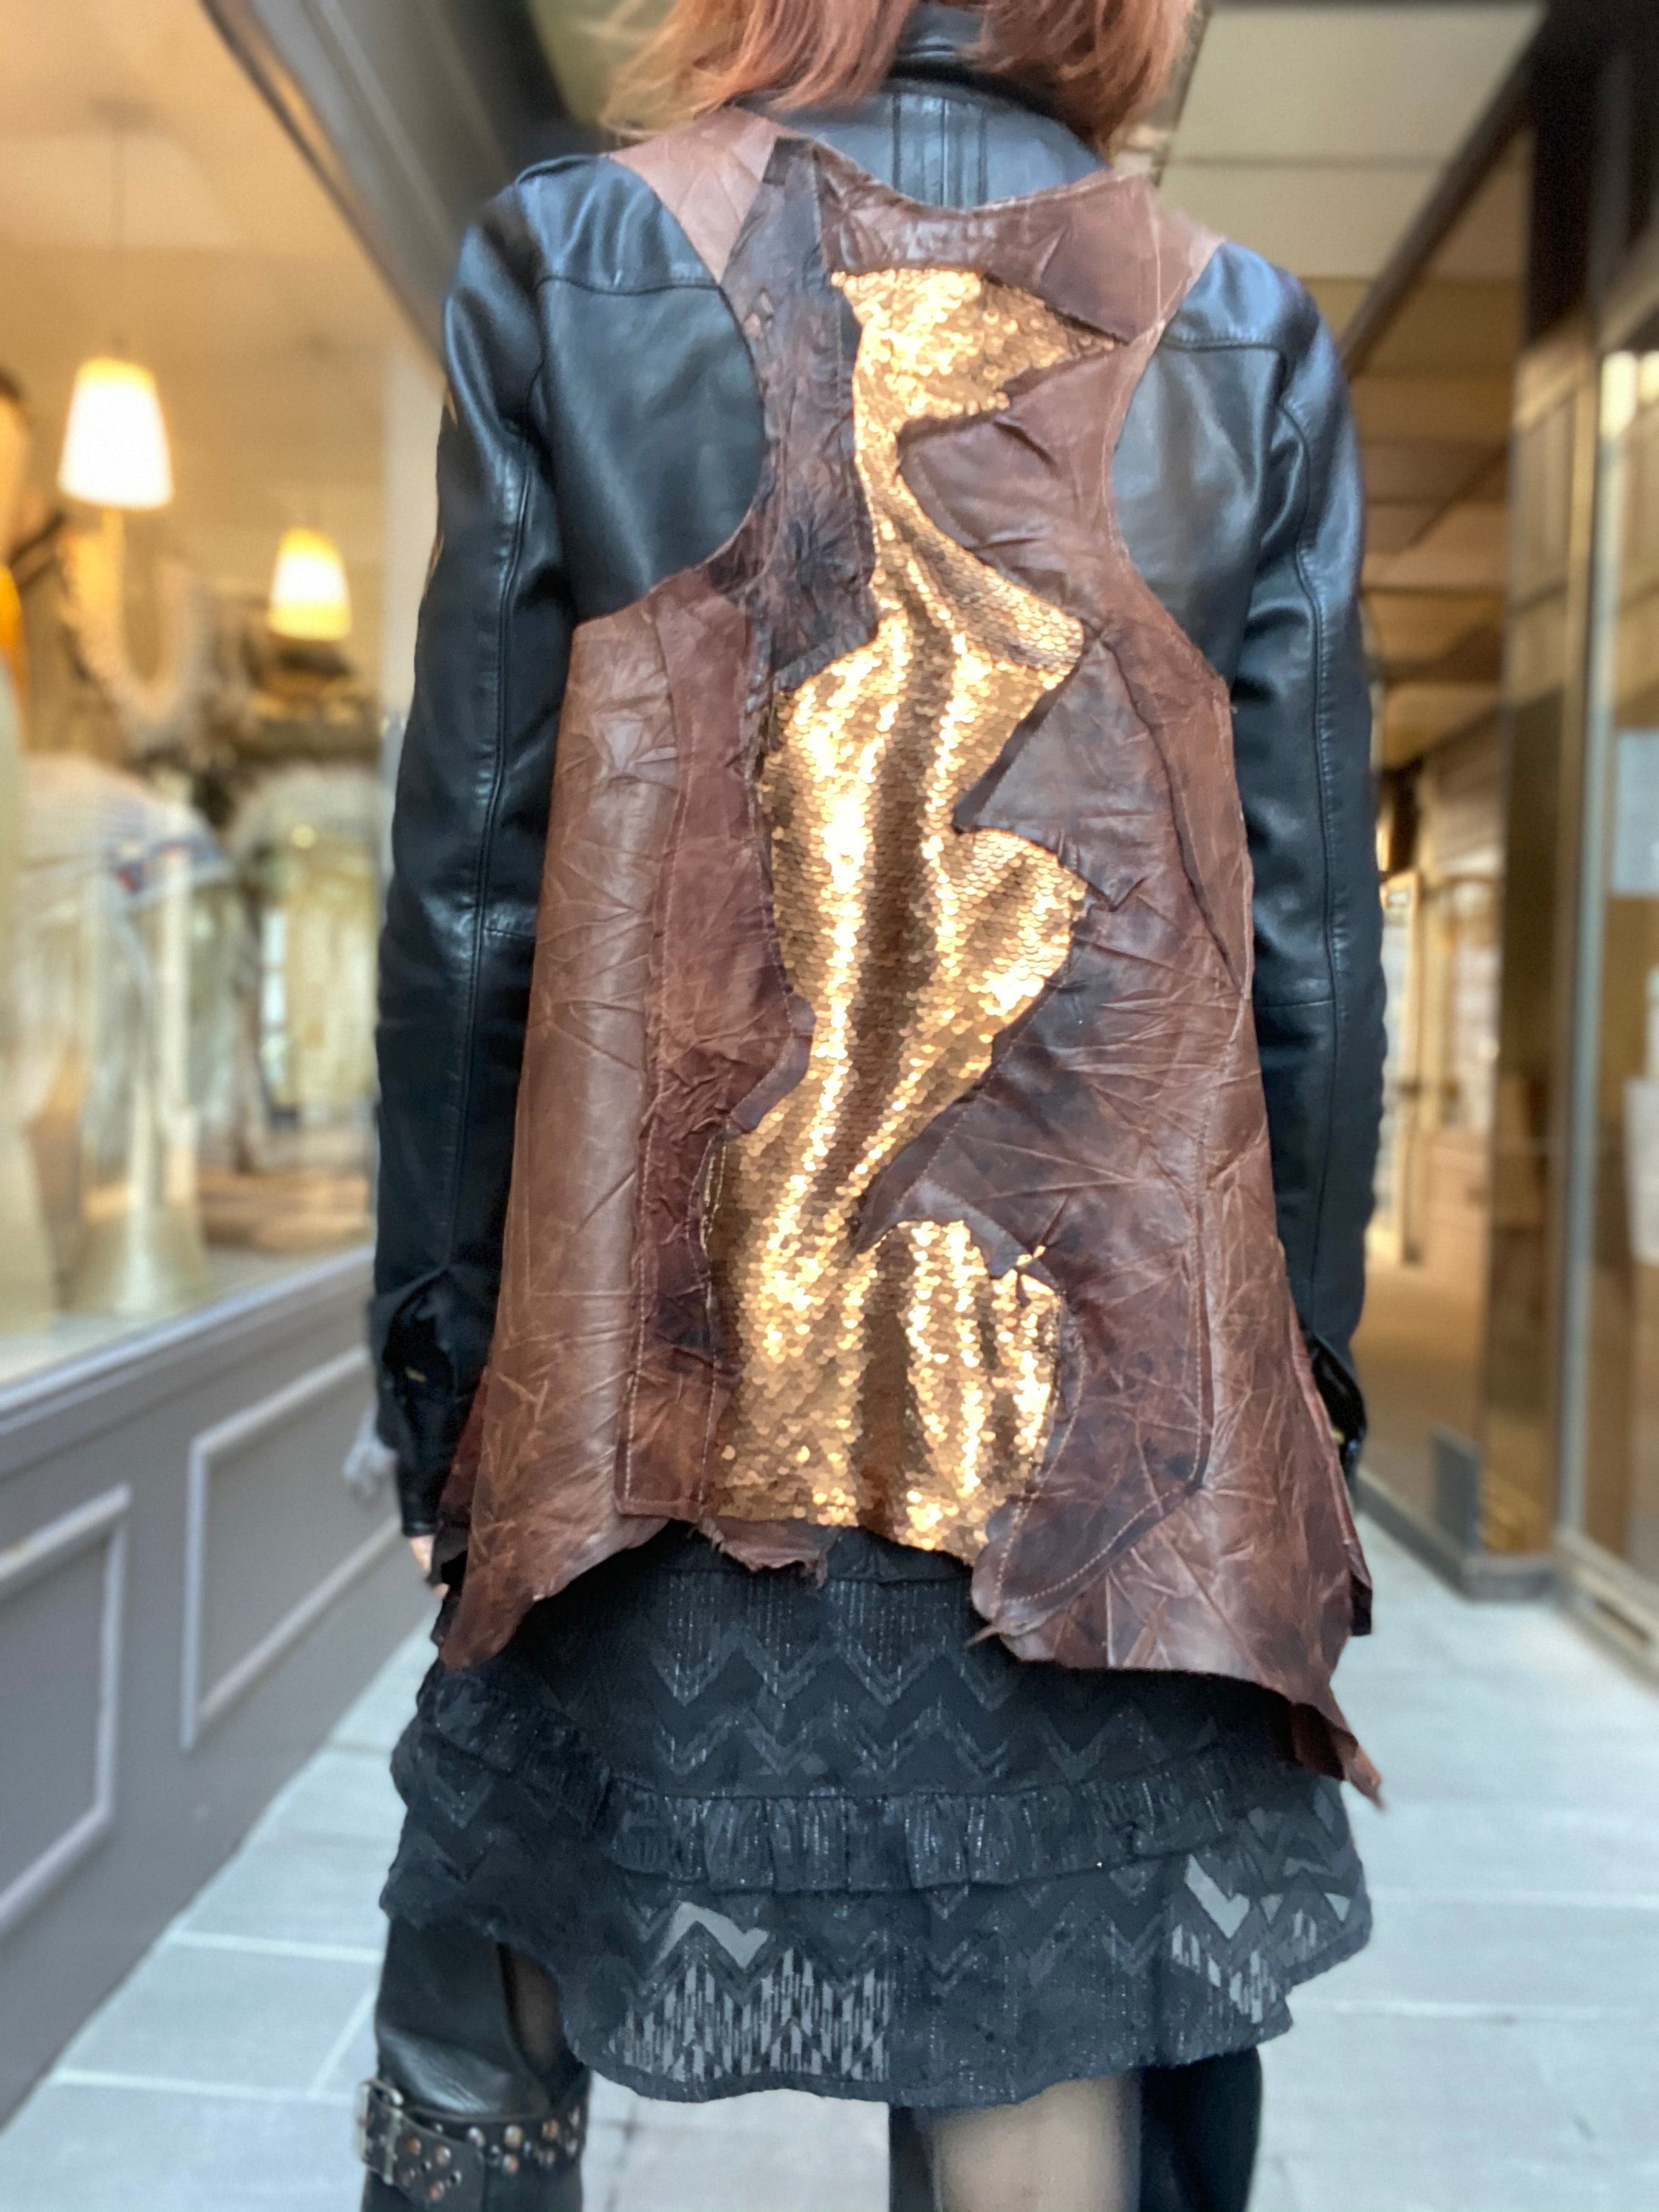 Glenn Iguan Atypikskin leather vest